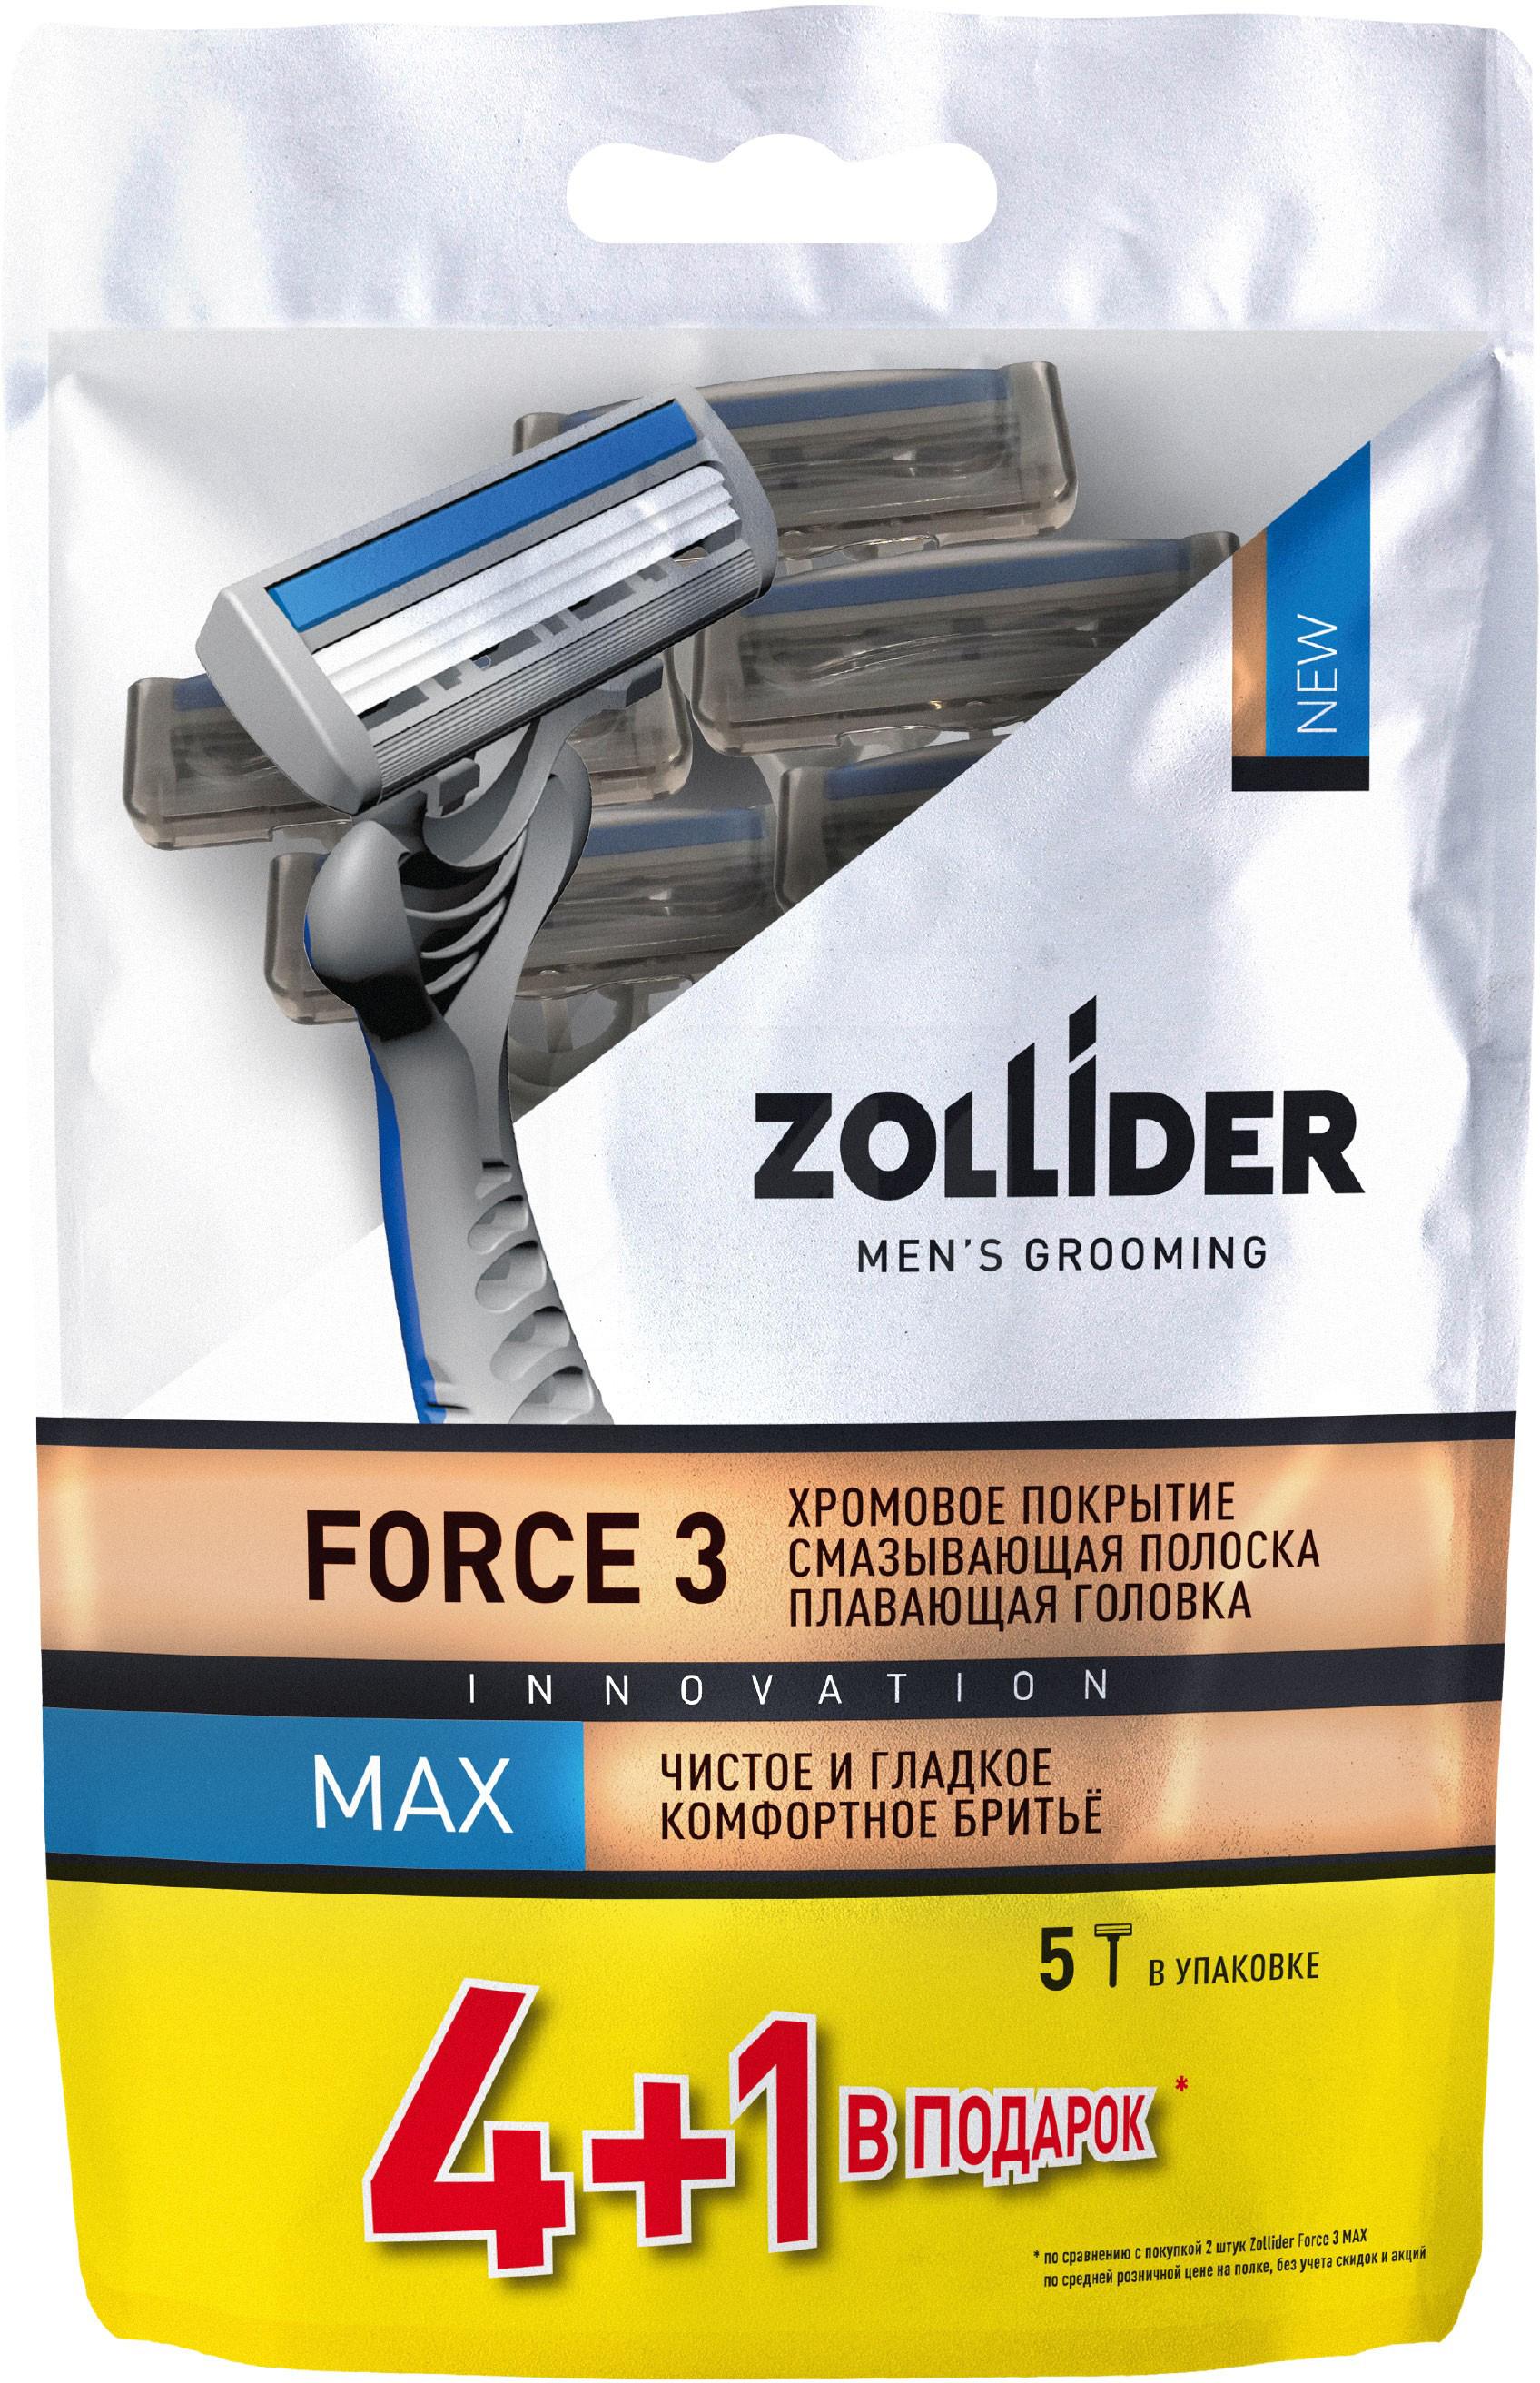 Бритвенные станки мужские Zollider Force 3 Max одноразовые с тройными лезвиями 4 + 1 шт derby станки бритвенные одноразовые с тройным лезвием